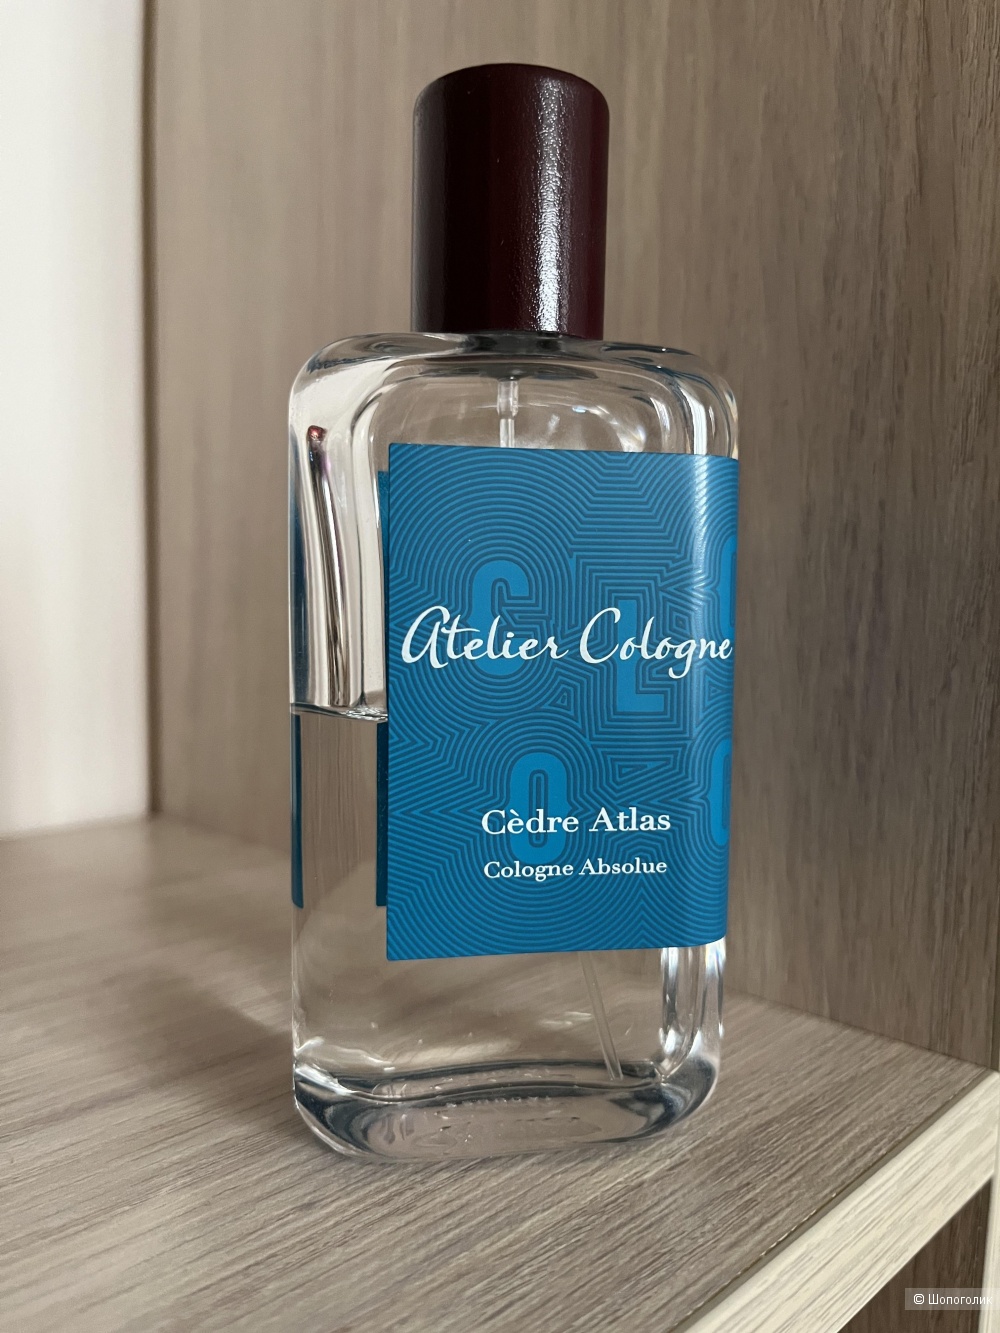 Atelier Cologne Cedre Atlas, остаток с флаконом